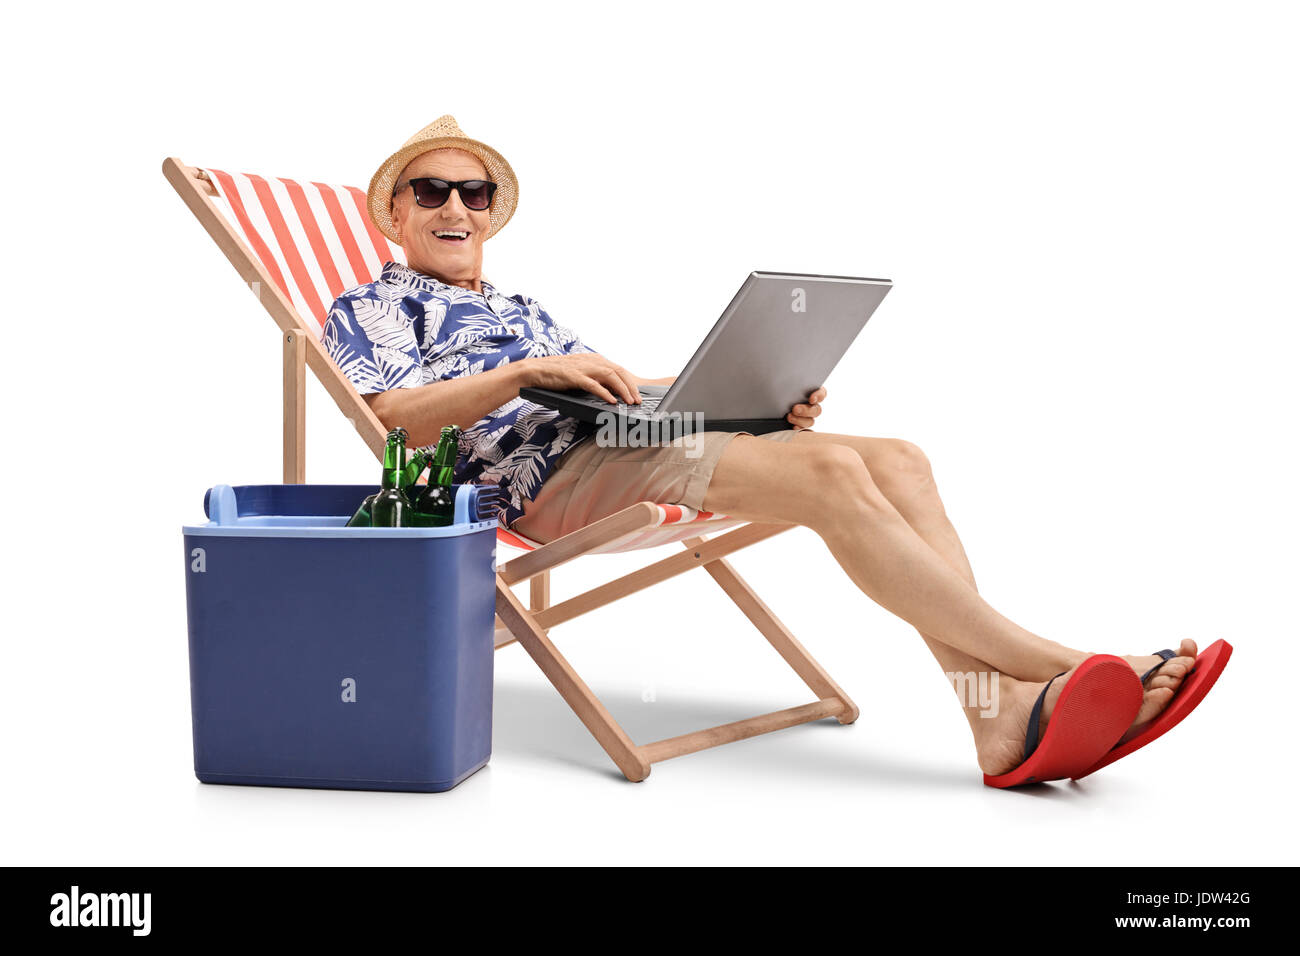 Anziani turistico con un laptop seduto in una sedia a sdraio accanto a una scatola di raffreddamento e guardando la telecamera isolata su sfondo bianco Foto Stock